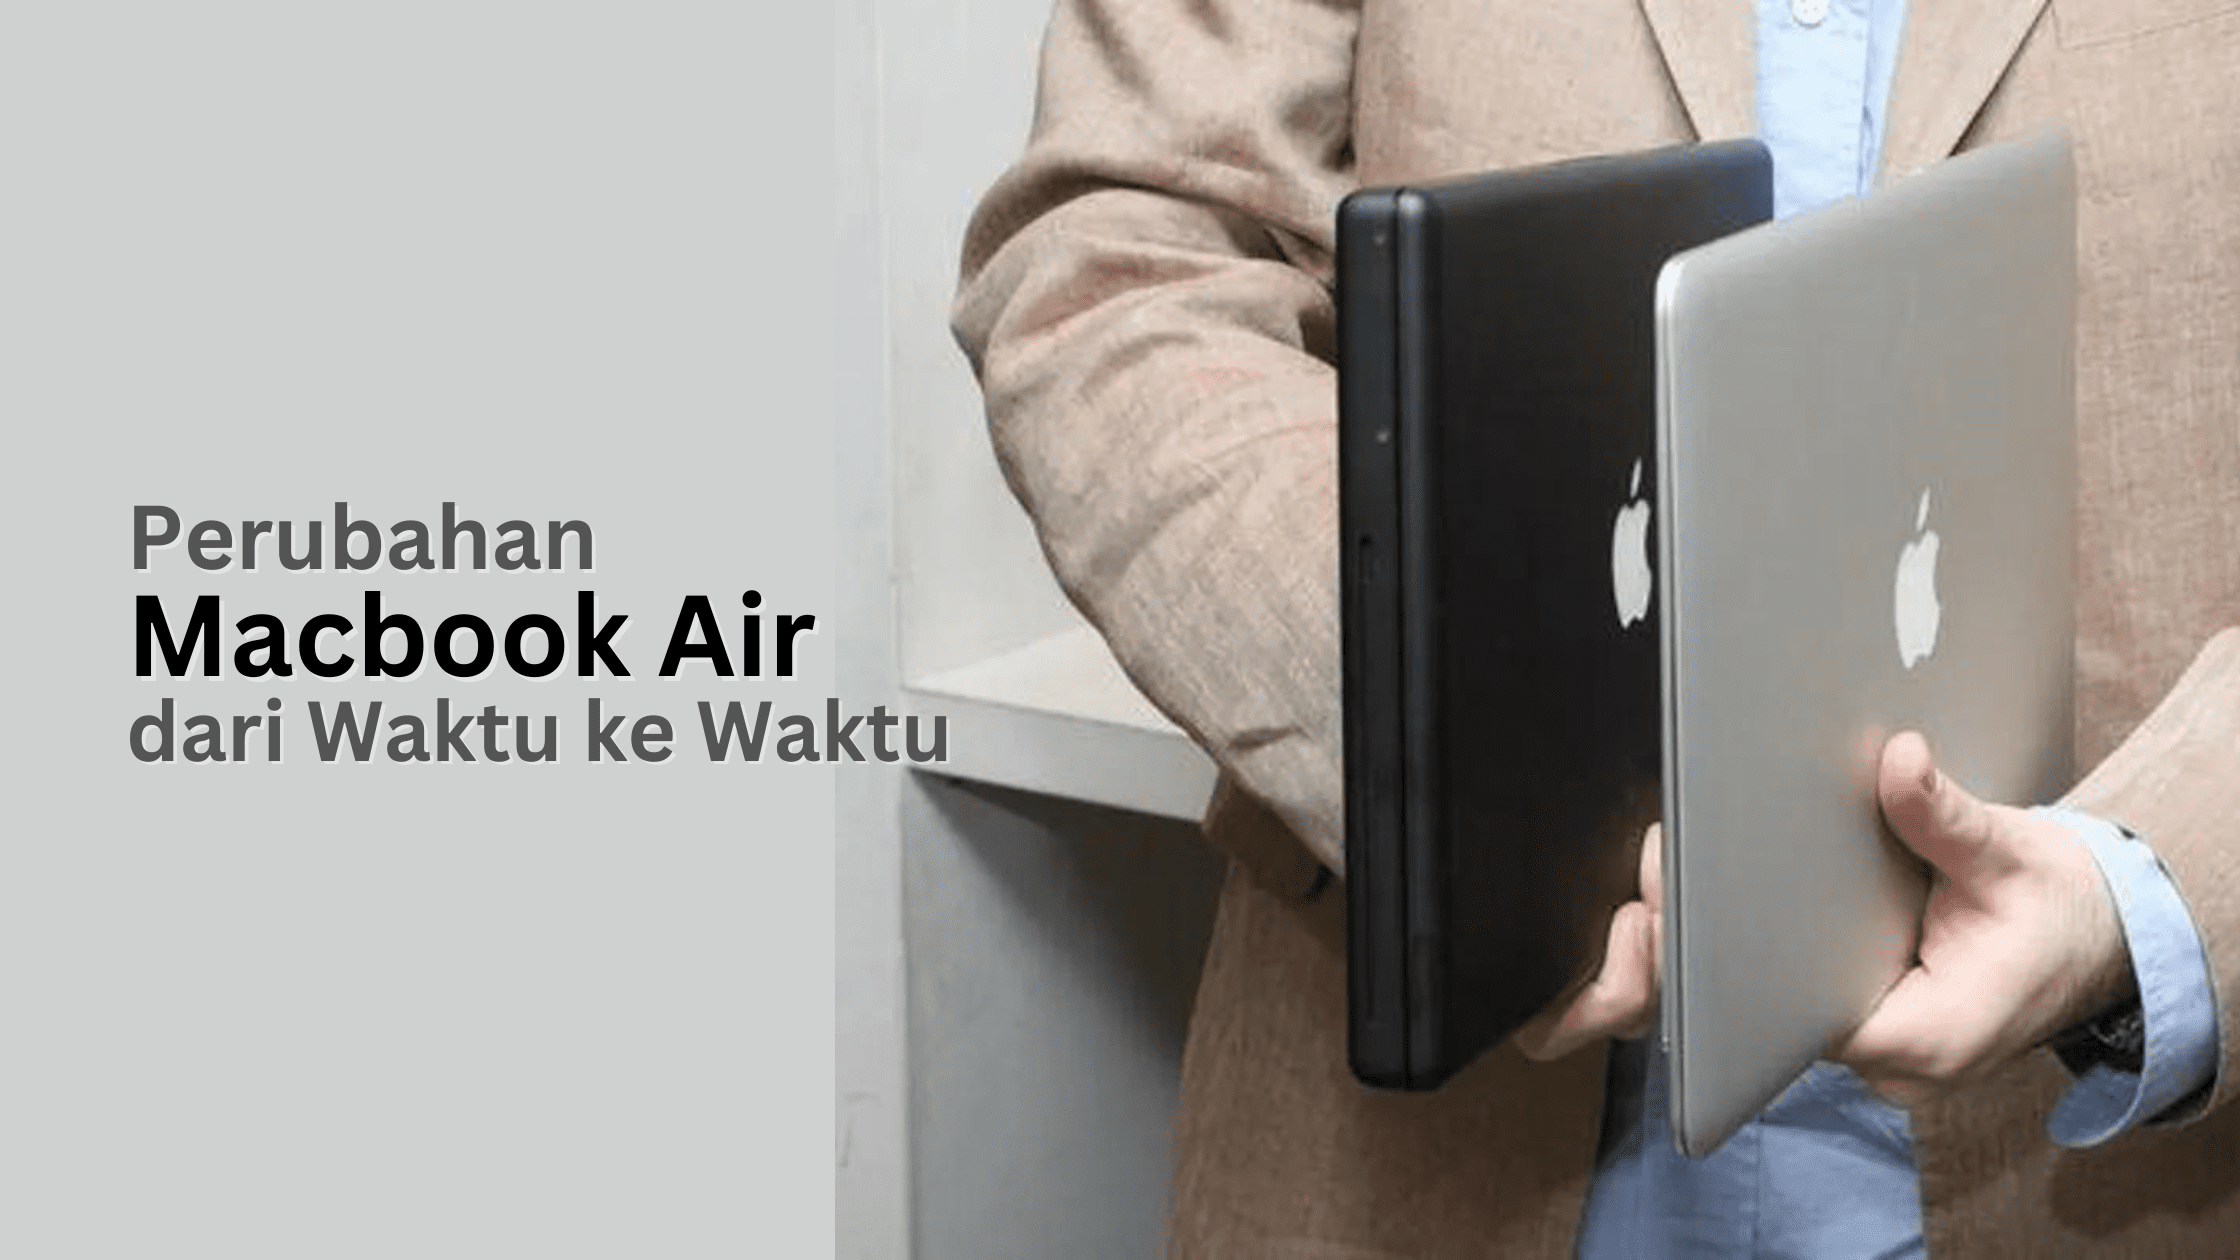 Perubahan Macbook Air dari Waktu ke Waktu